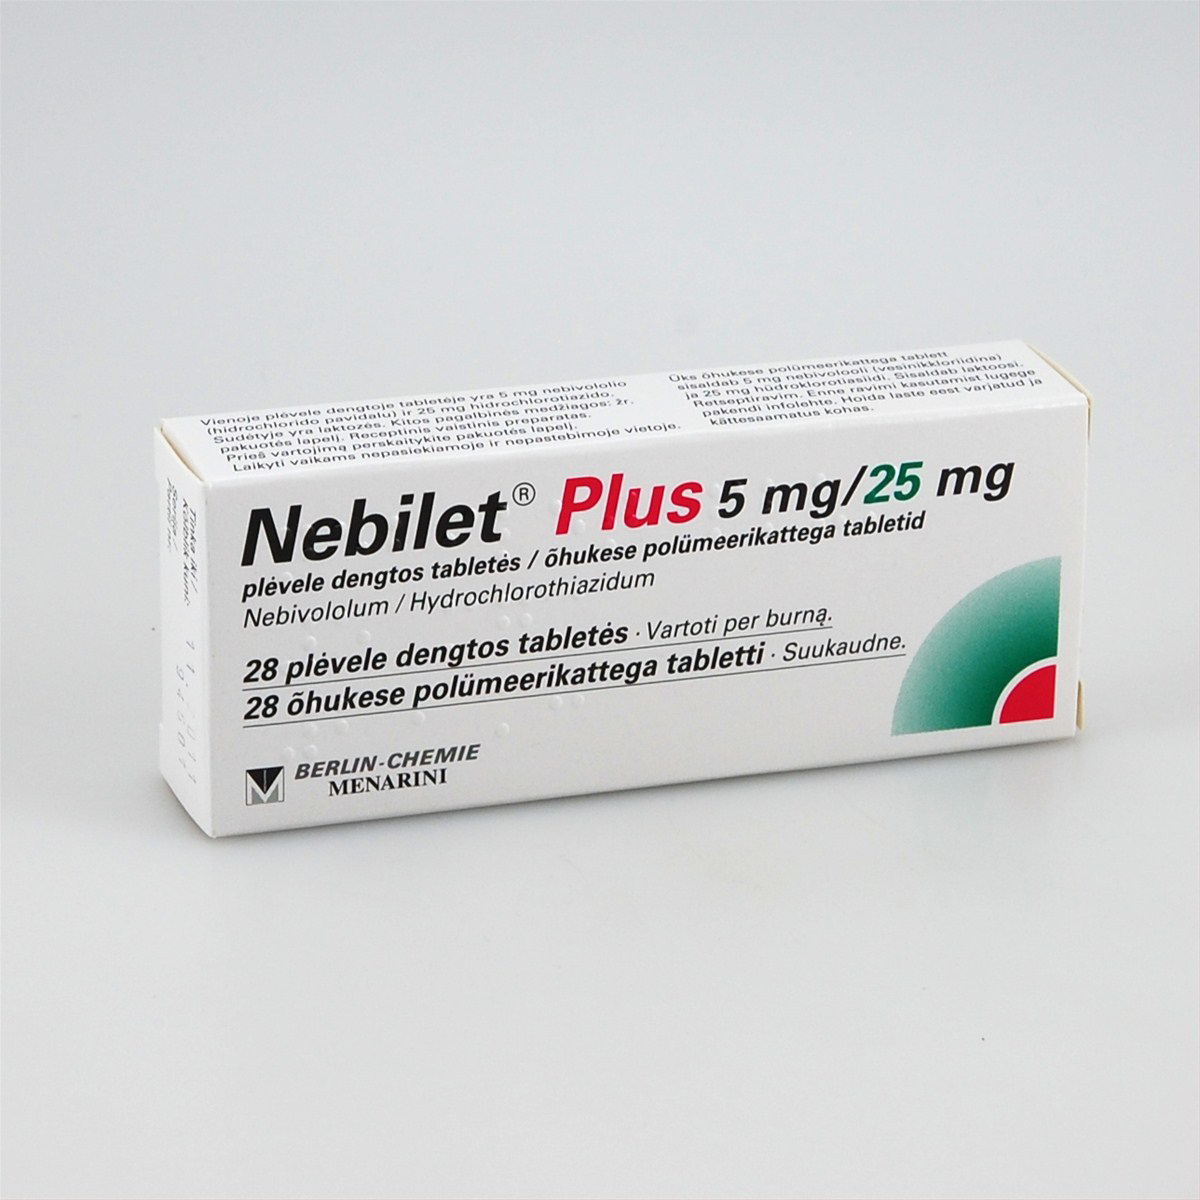 Небилет отзывы пациентов. Небилет 5 мг. Небилет 2.5 мг. Небилет плюс. Небилет 28 т Германия 5 мг.